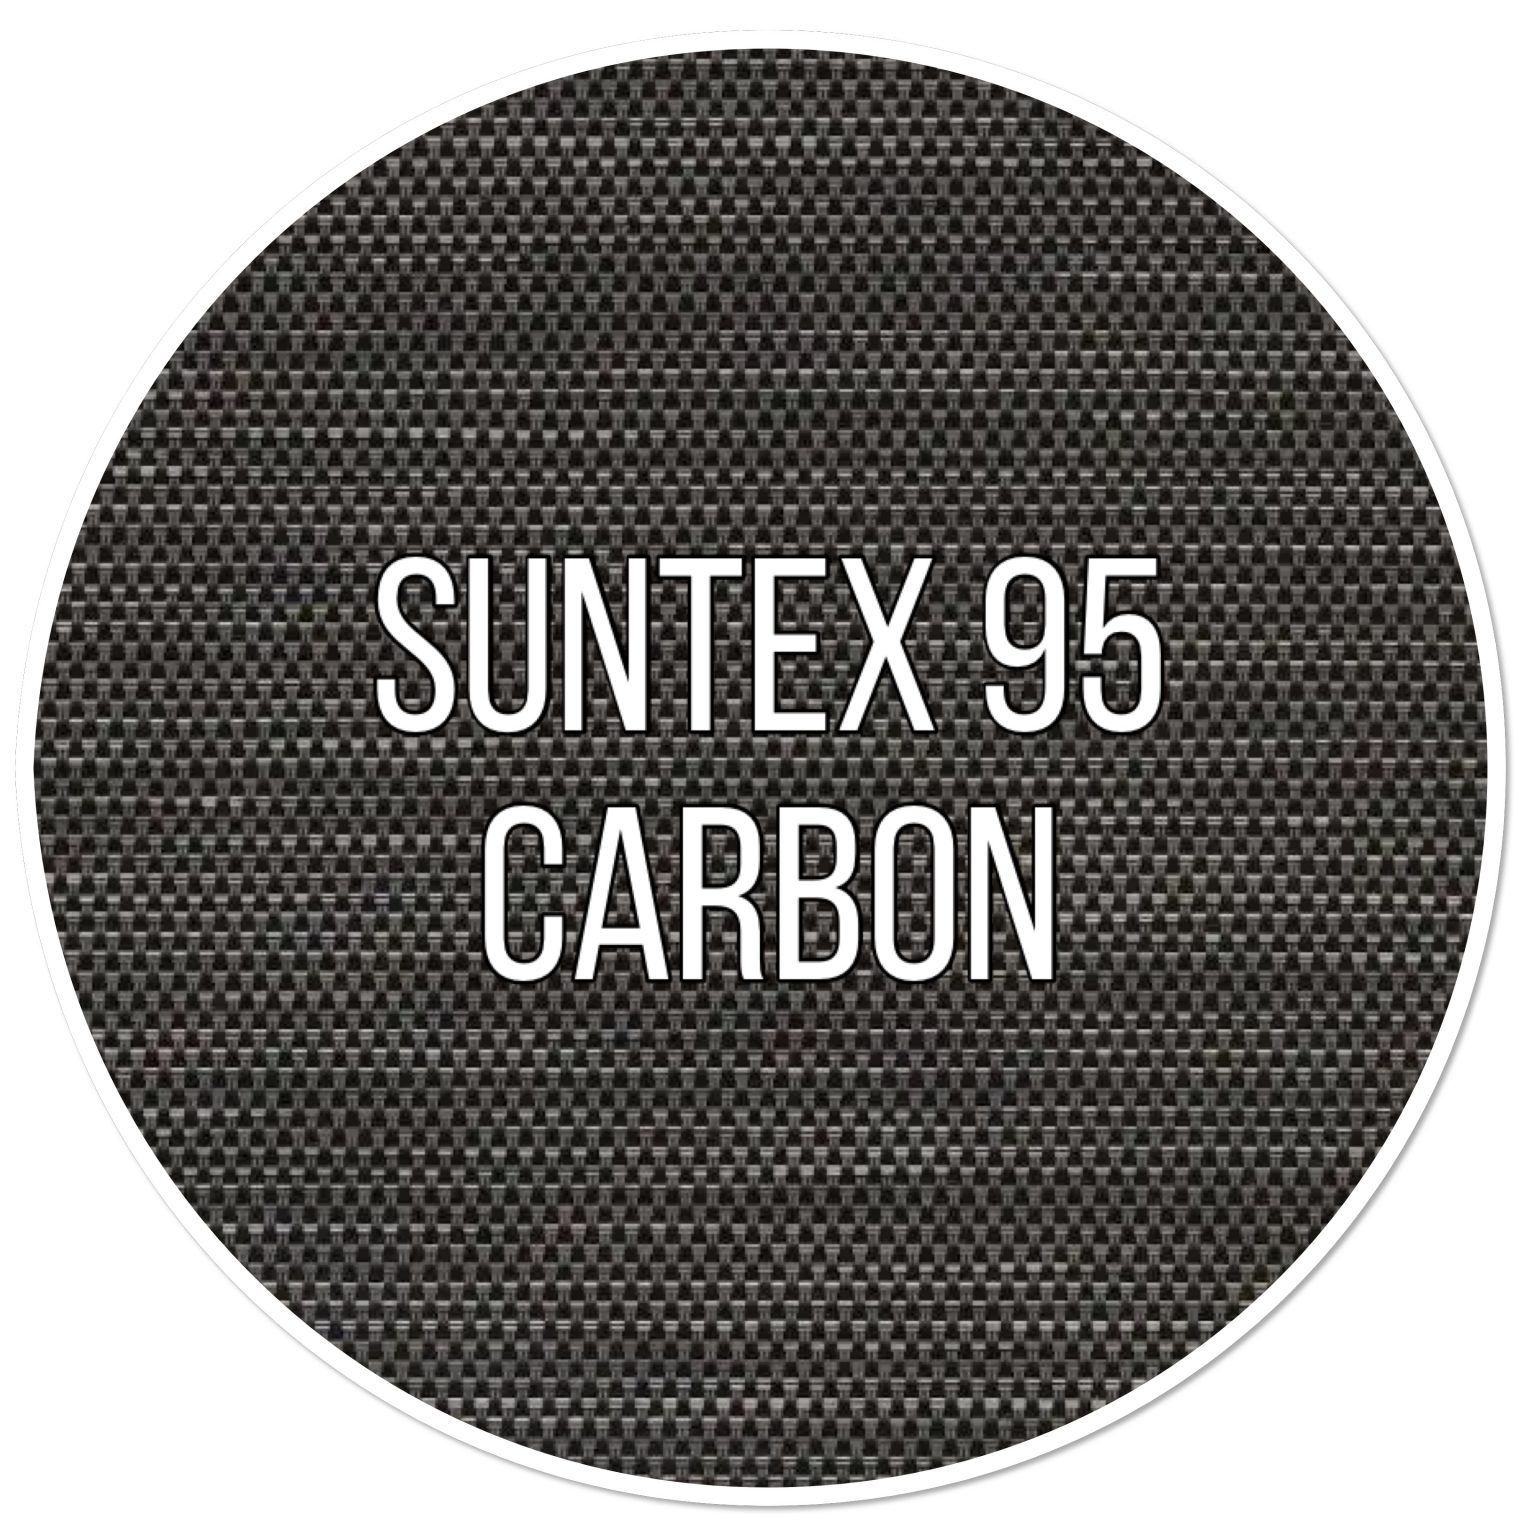 suntex 95 carbon